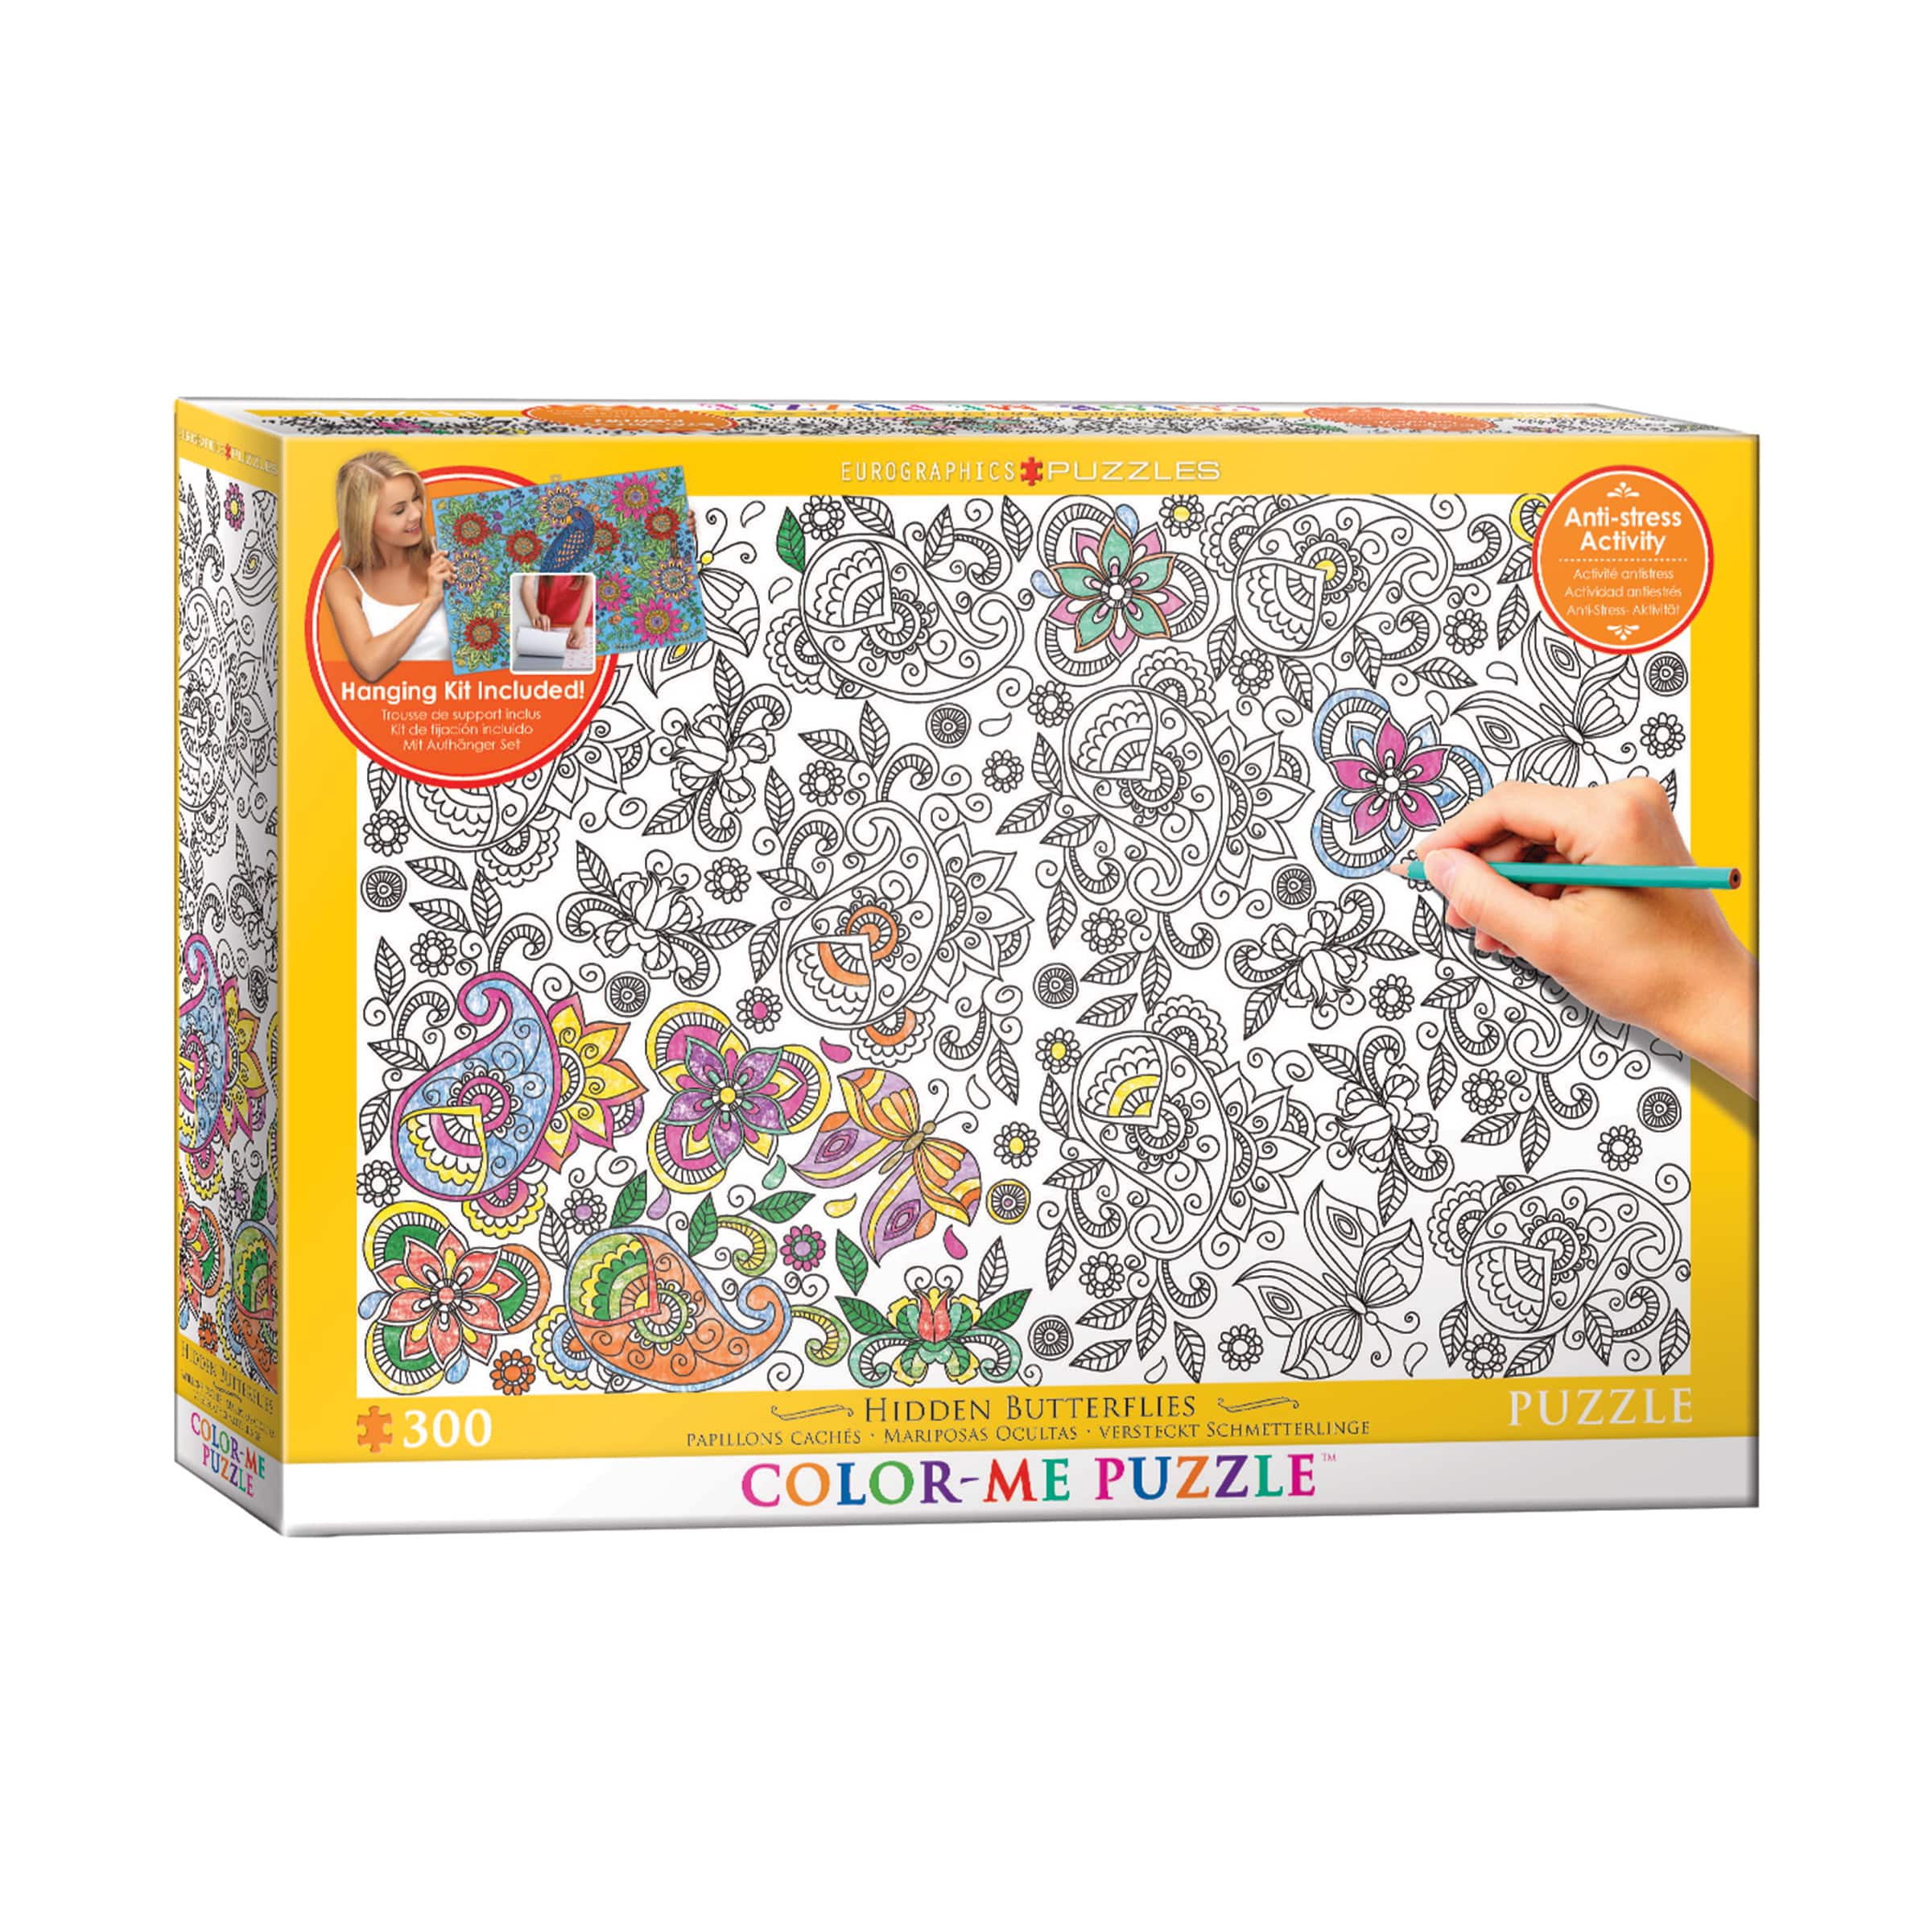 Color-Me Puzzle - Hidden Butterflies: 300 Pcs